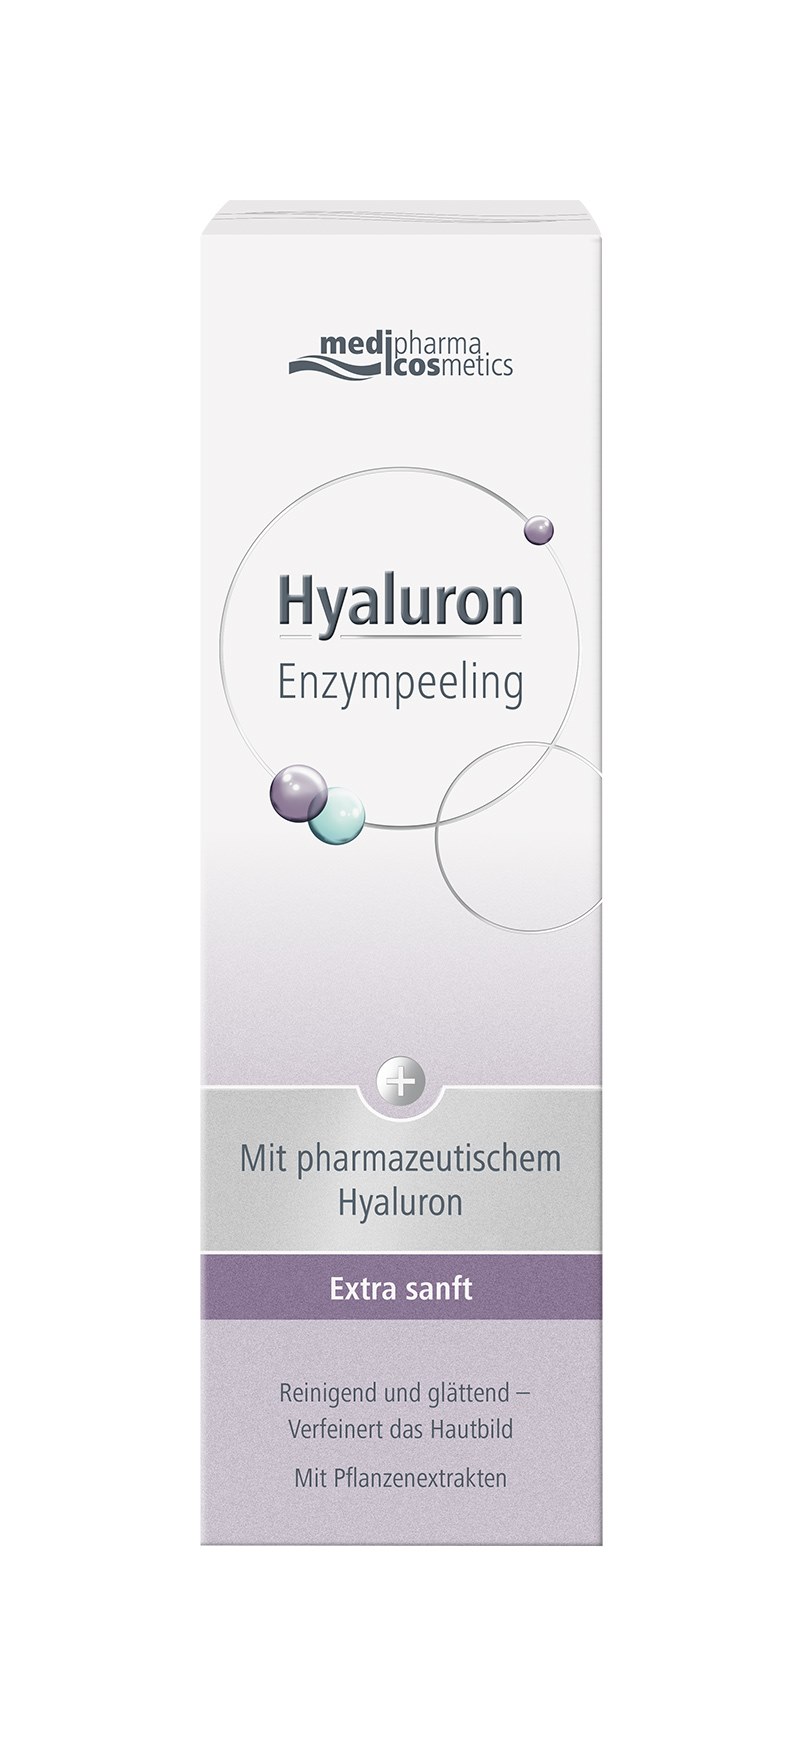 Hyaluron Enzympeeling - Packshot